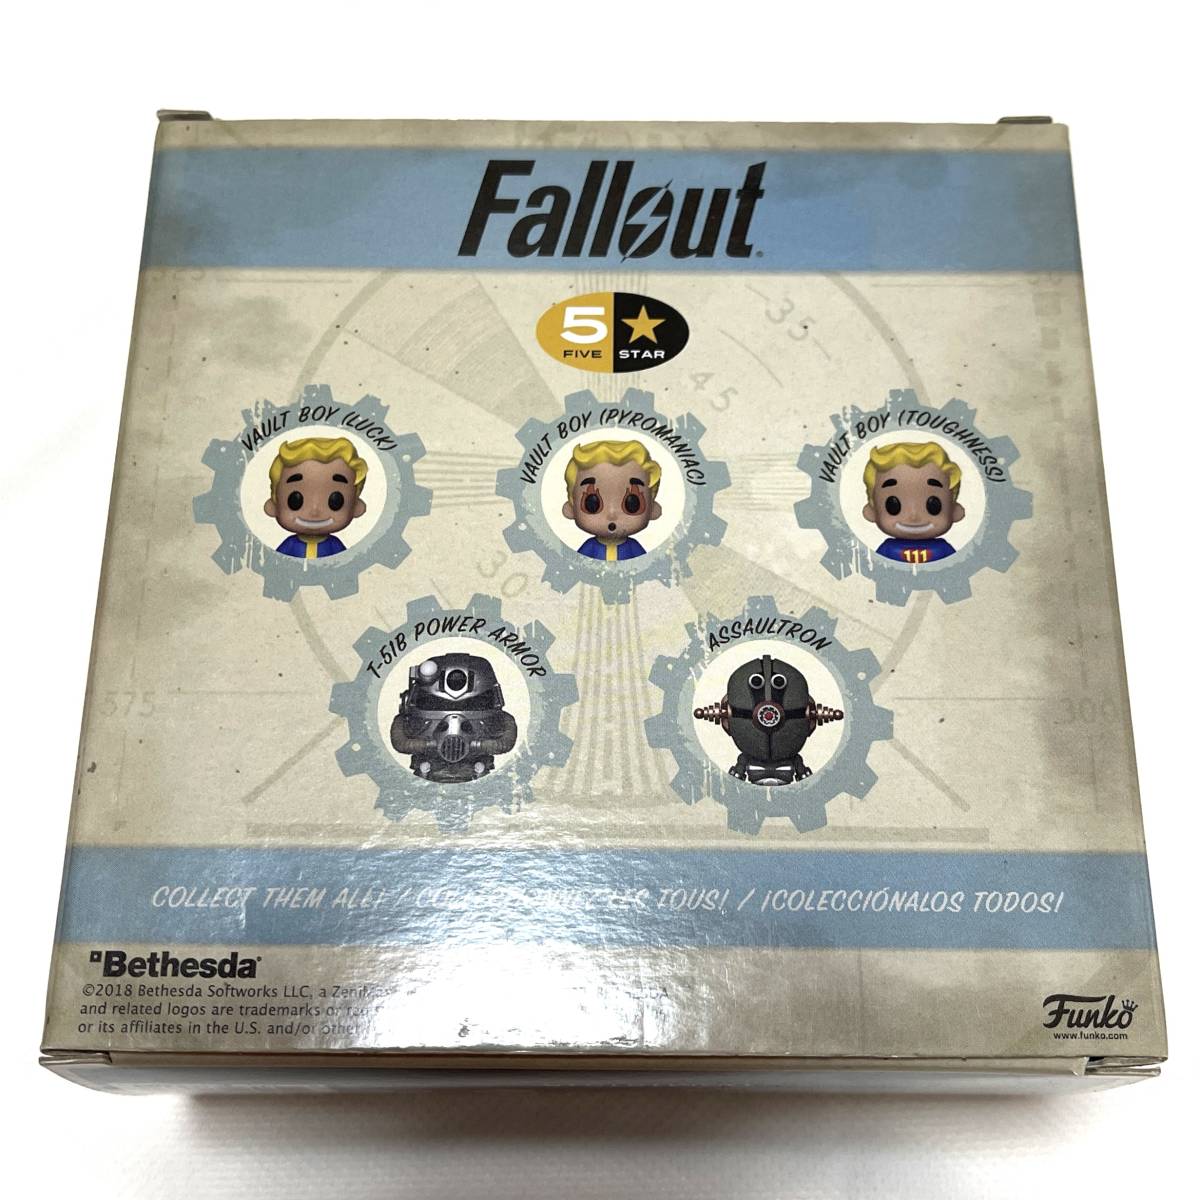 即決価格 Fallout Funko 5 Star Vault Boy Pyromaniac フィギュア フォールアウト ベセスダ ボルトボーイ ファンコの画像3